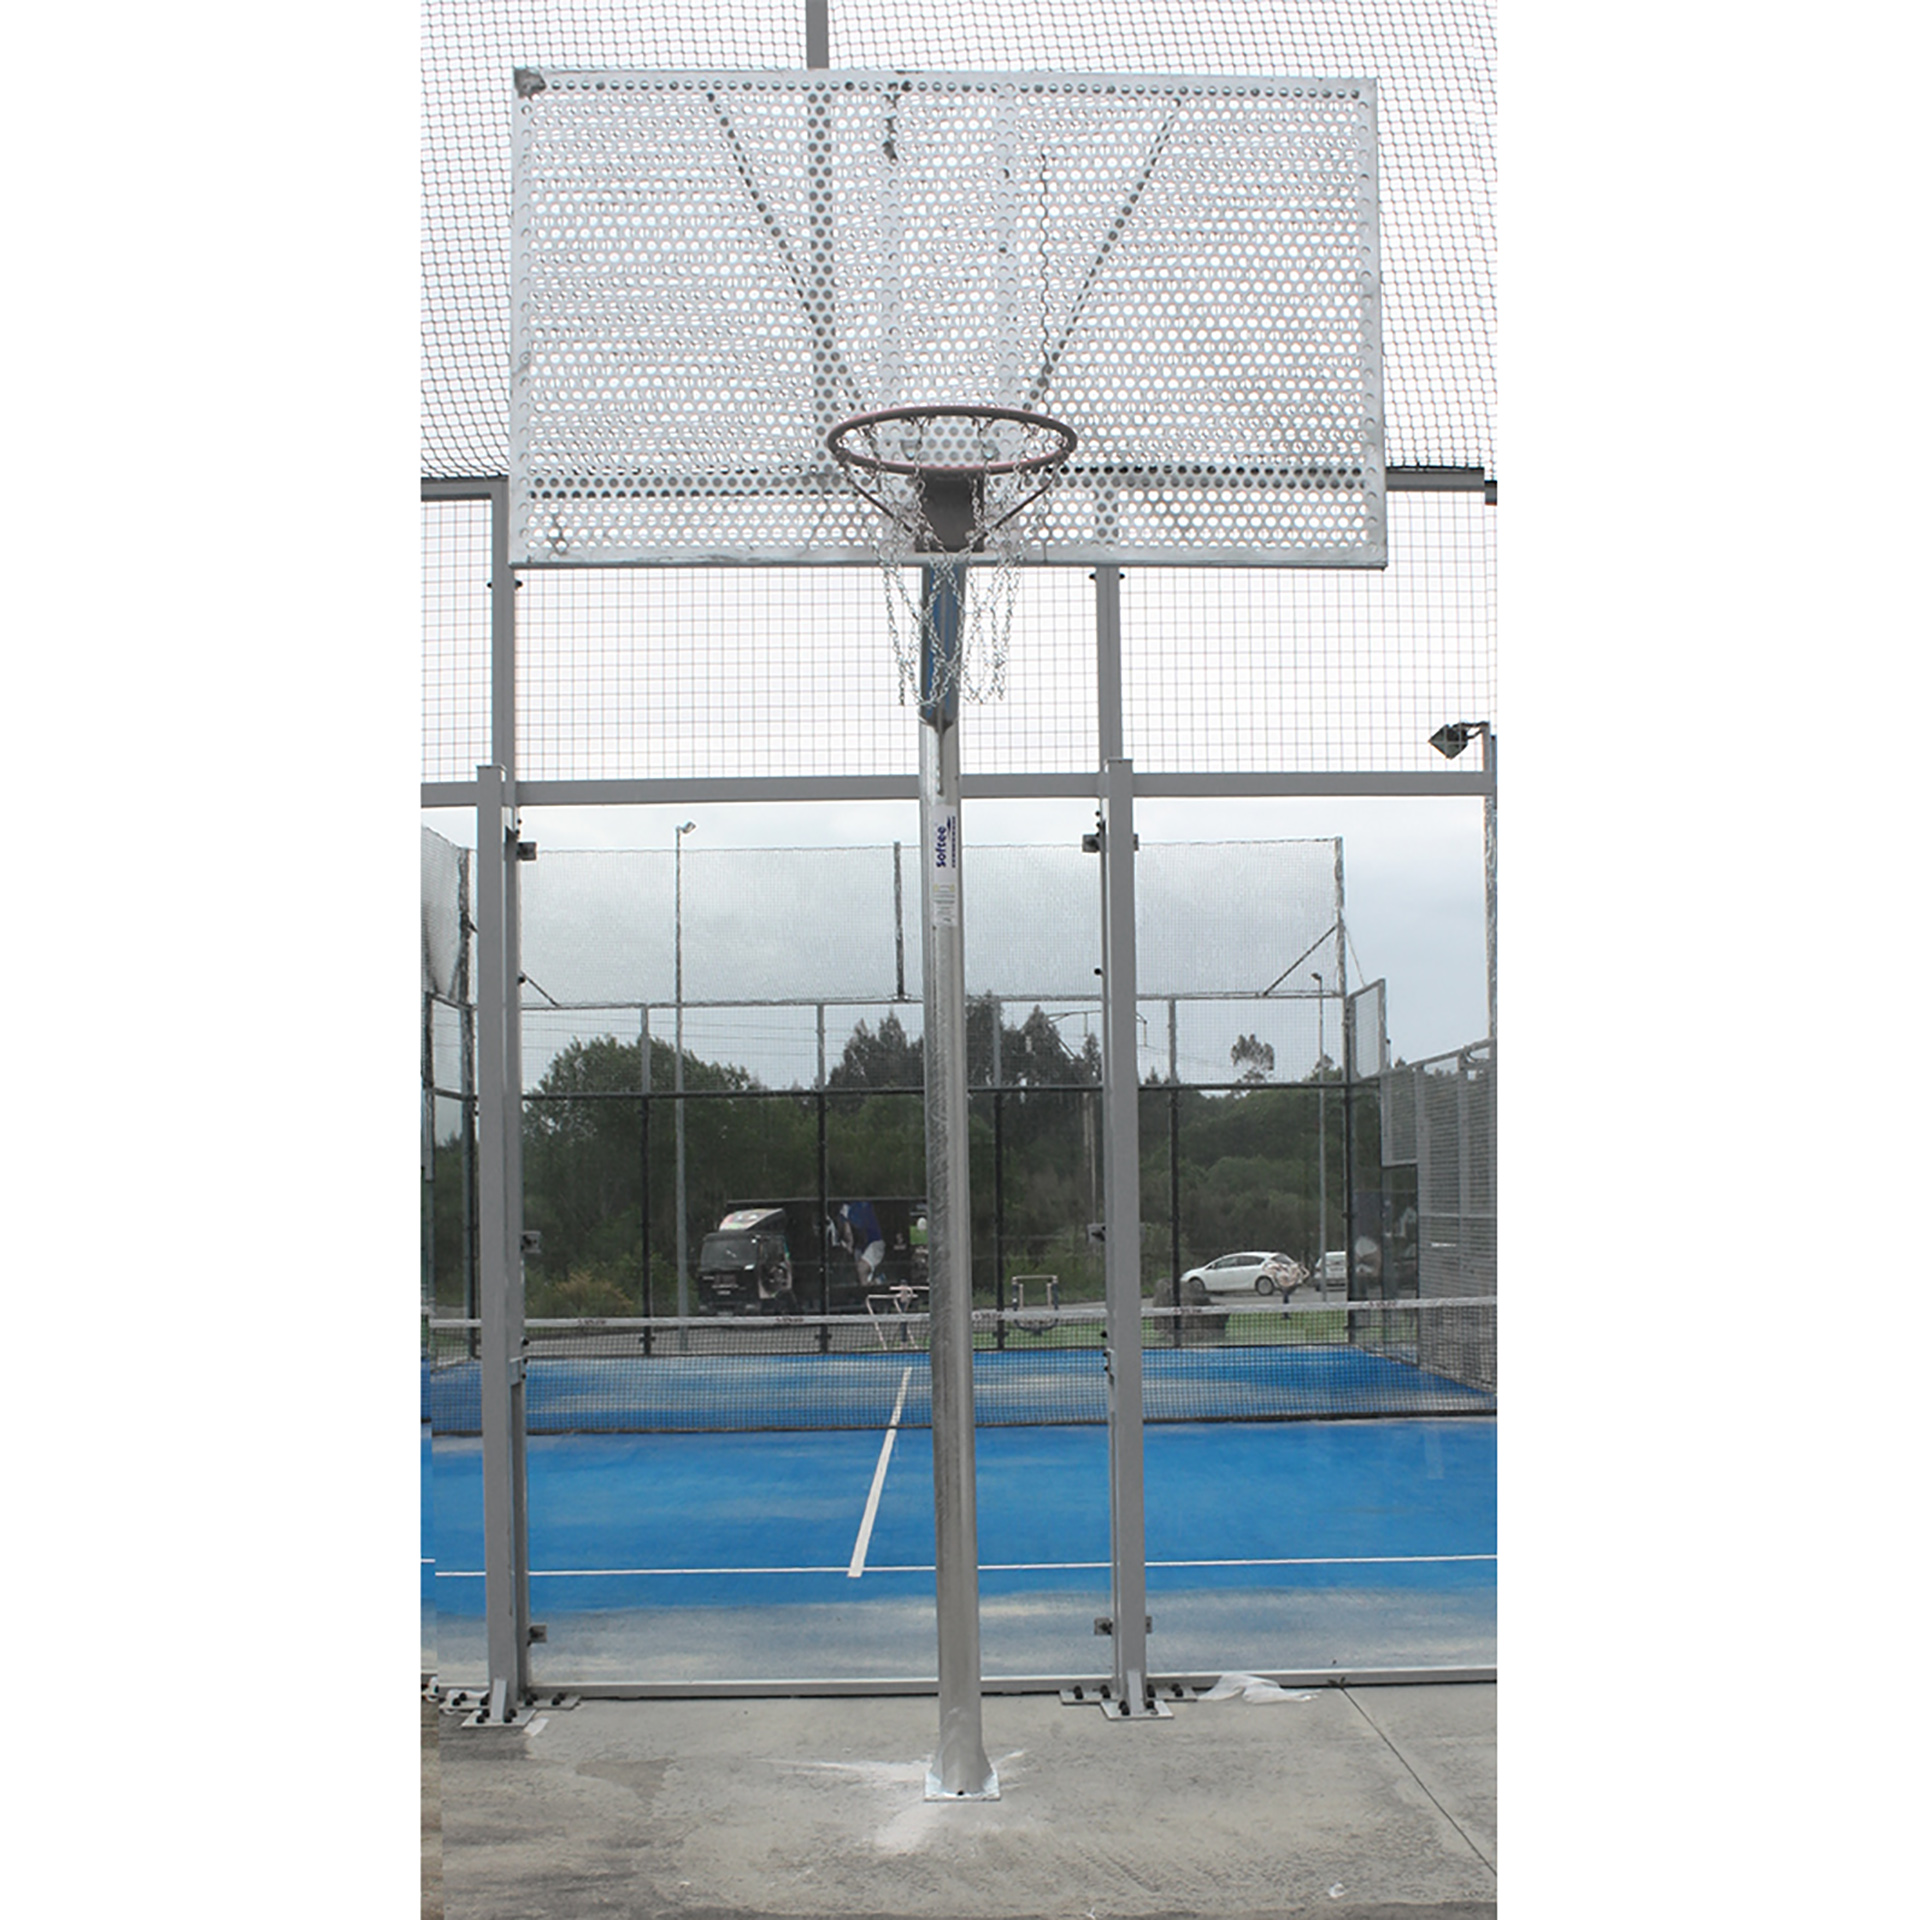 jgo canastas antivandalicas baloncesto new tubo 114 mm galvanizadas -incluye aros, redes y tableros- 4